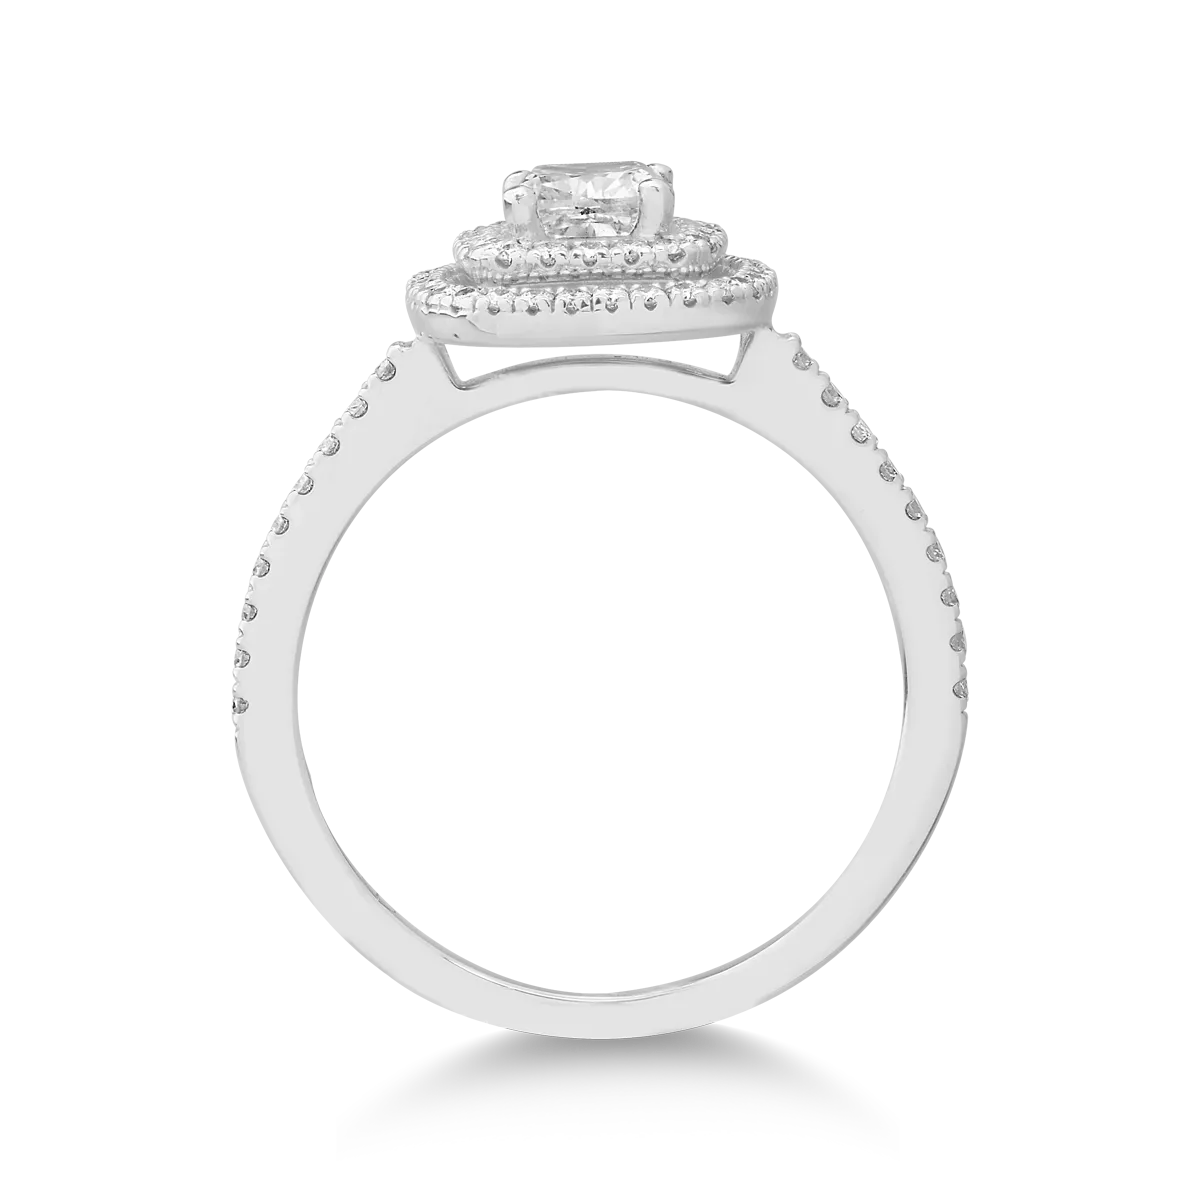 18K fehérarany eljegyzési gyűrű 1ct gyémánttal és 0.34ct gyémántokkal